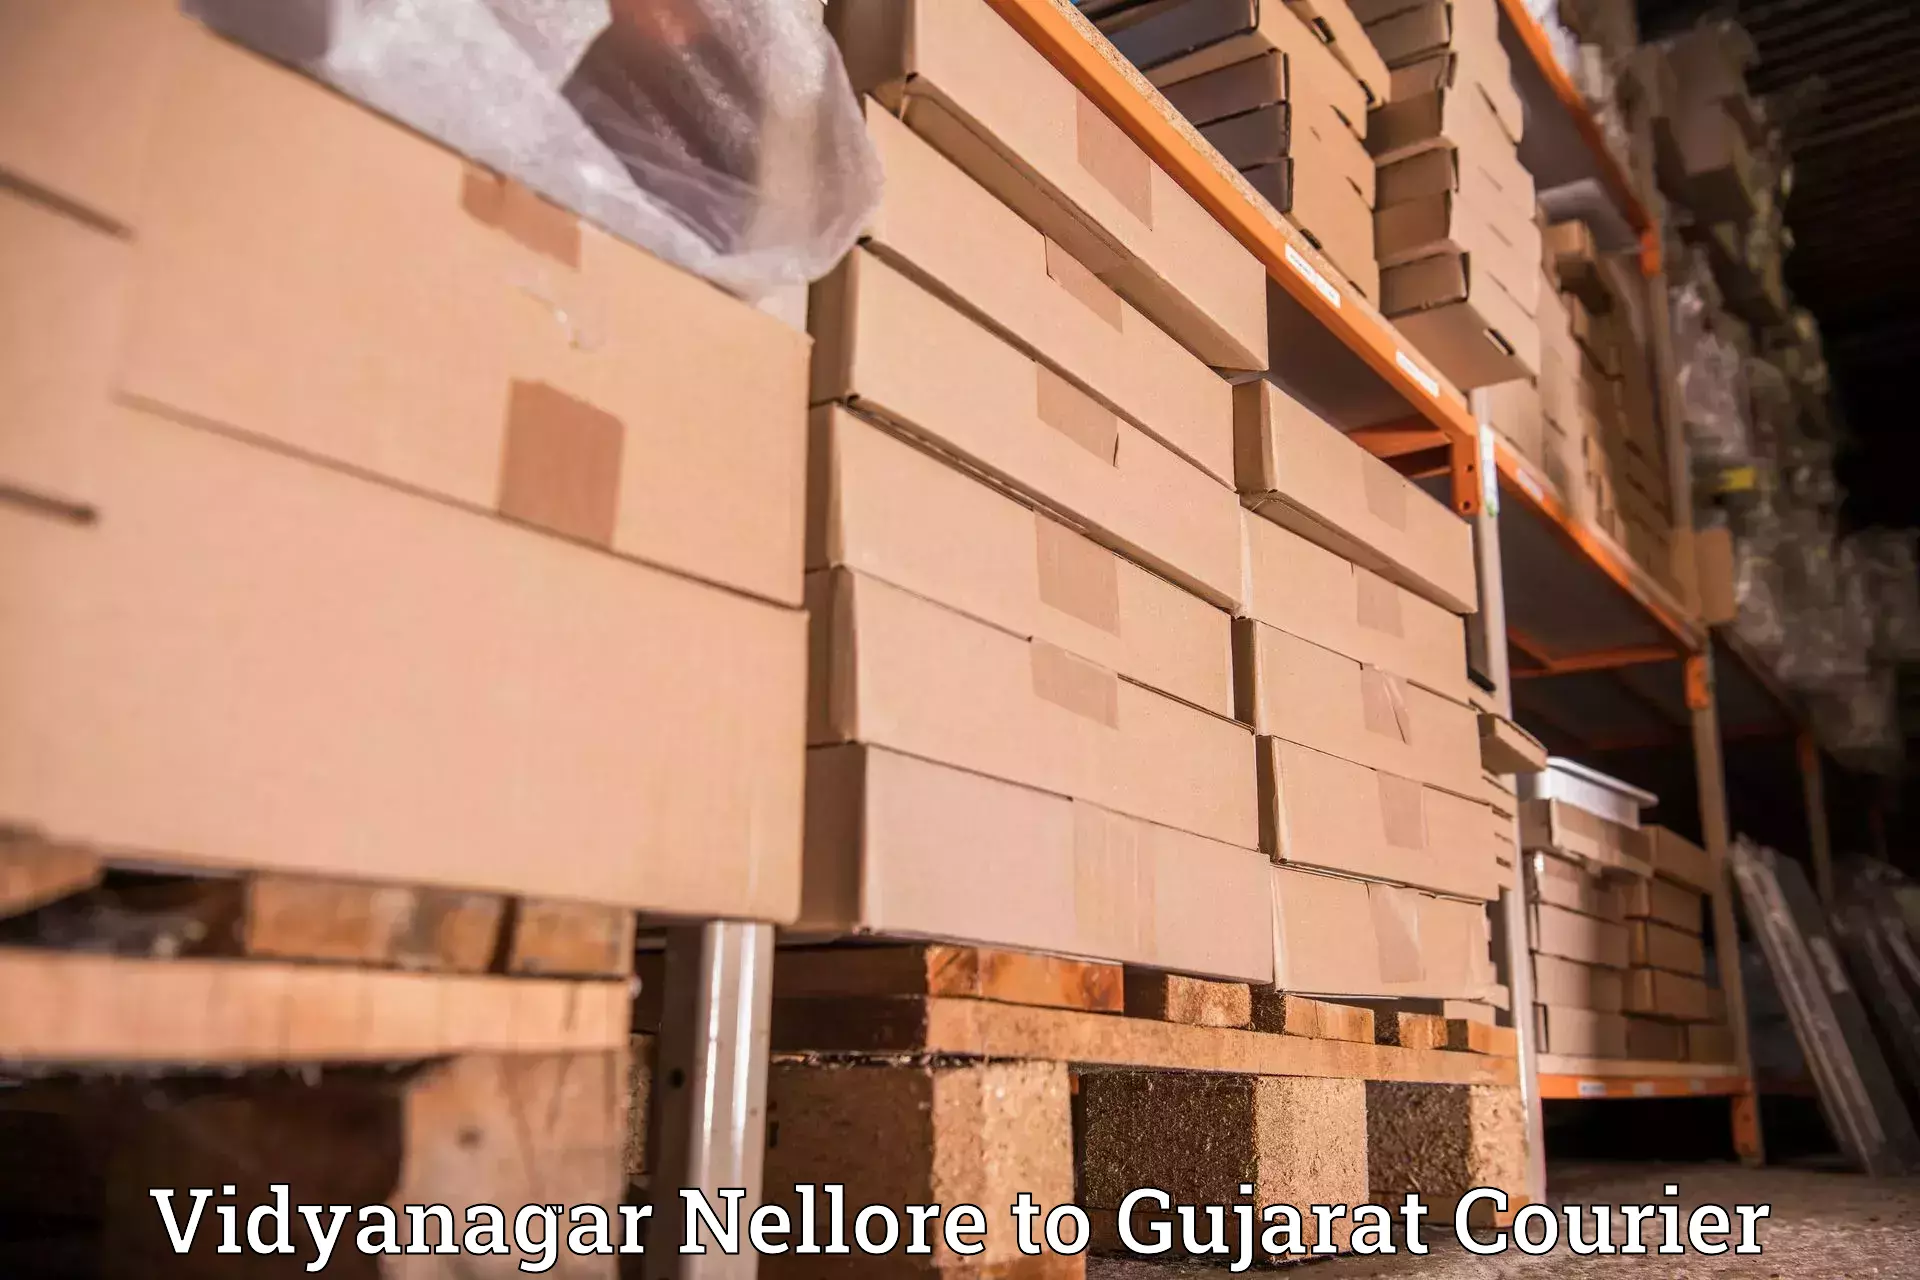 Efficient freight service Vidyanagar Nellore to Visavadar